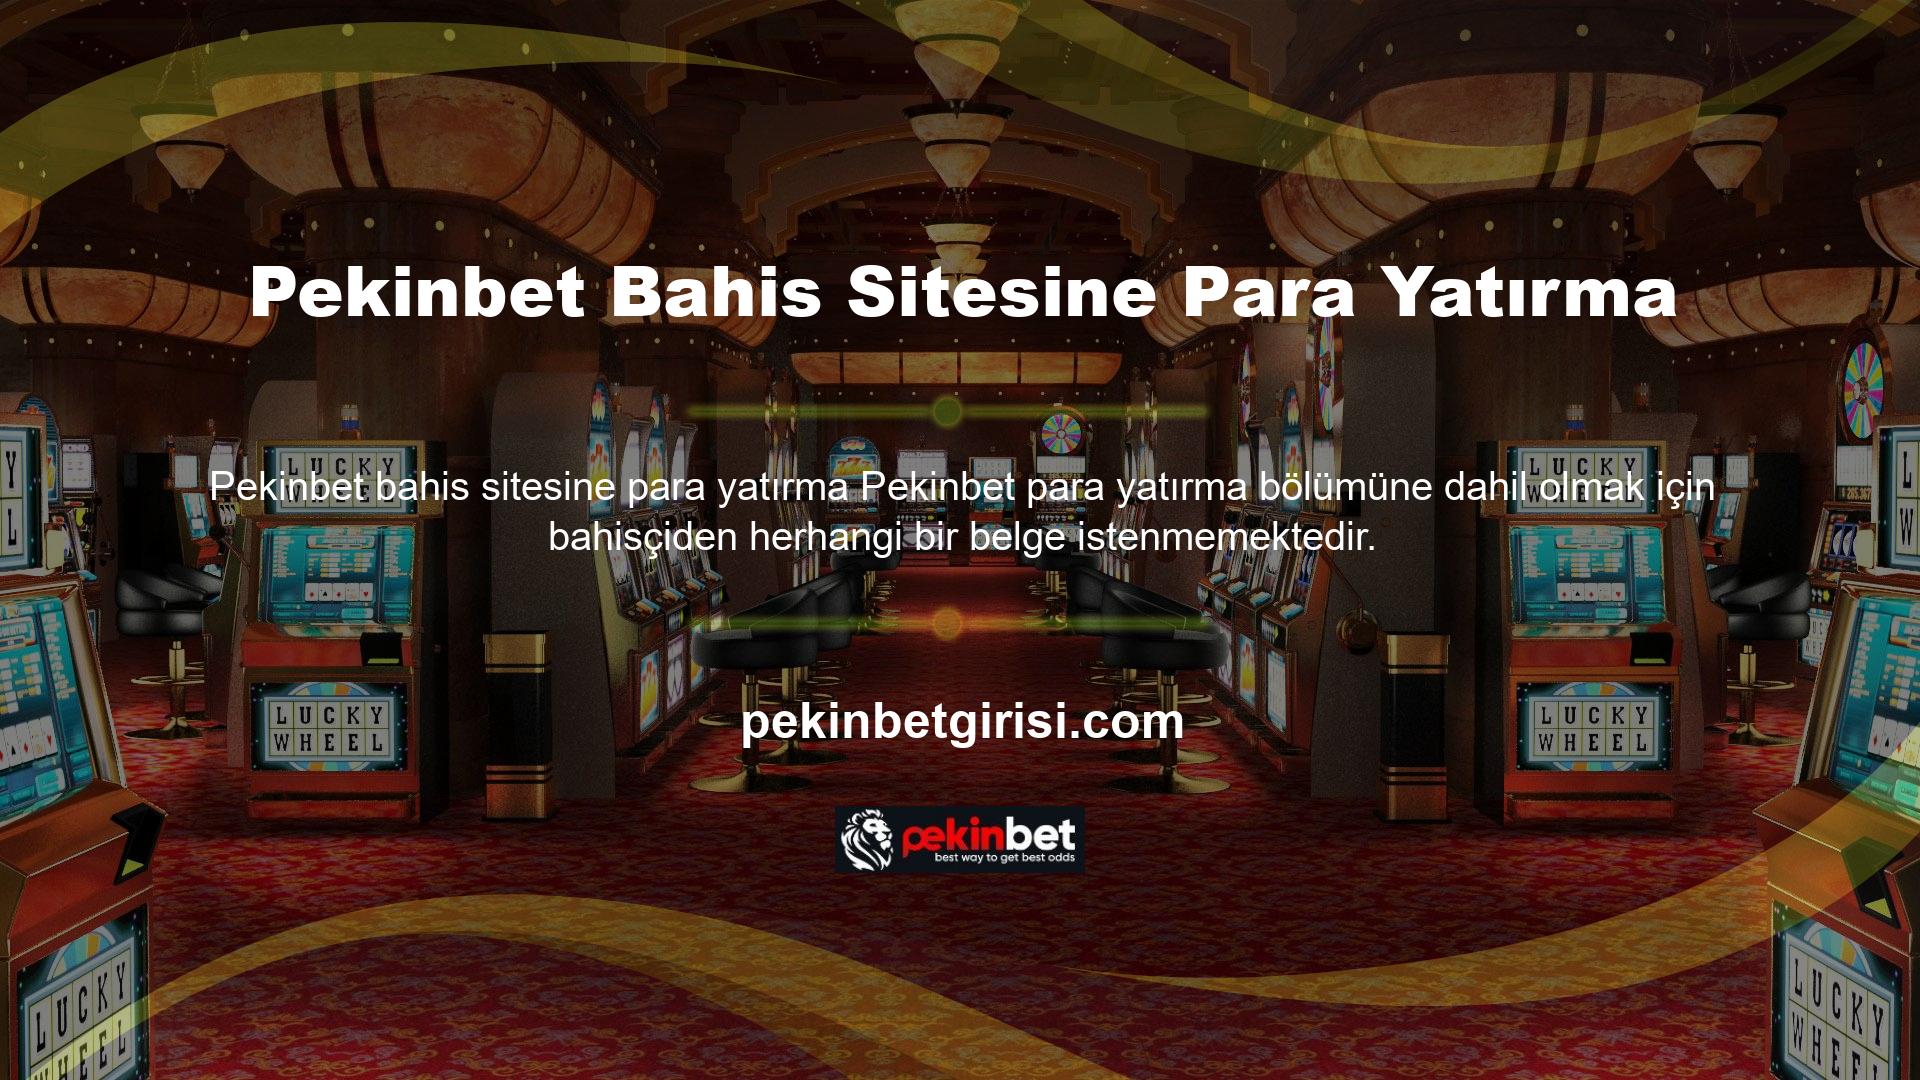 Pekinbet bahis sitelerinin korunması, kullanıcıların diğer ülkelerin Casino platformlarının kontrolü altında olmadığı inancına dayanmaktadır